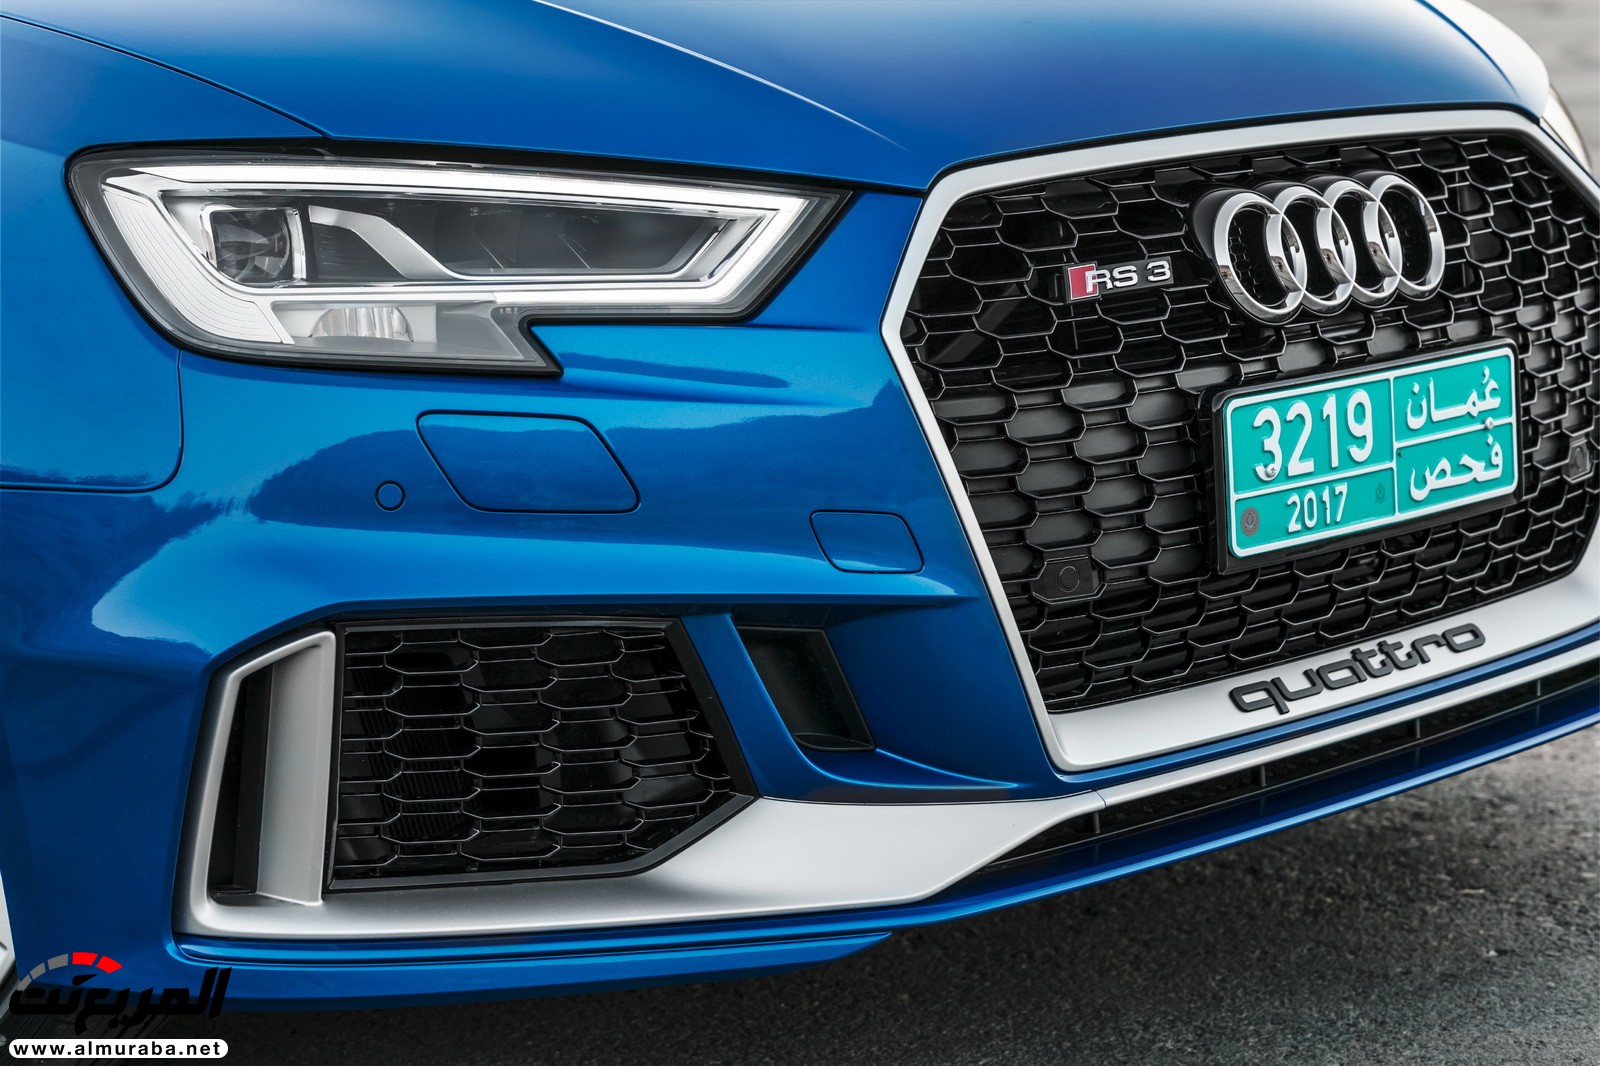 "أودي" تكشف عن RS3 الجديدة كليا 2018 بقوة 395 حصان Audi 58